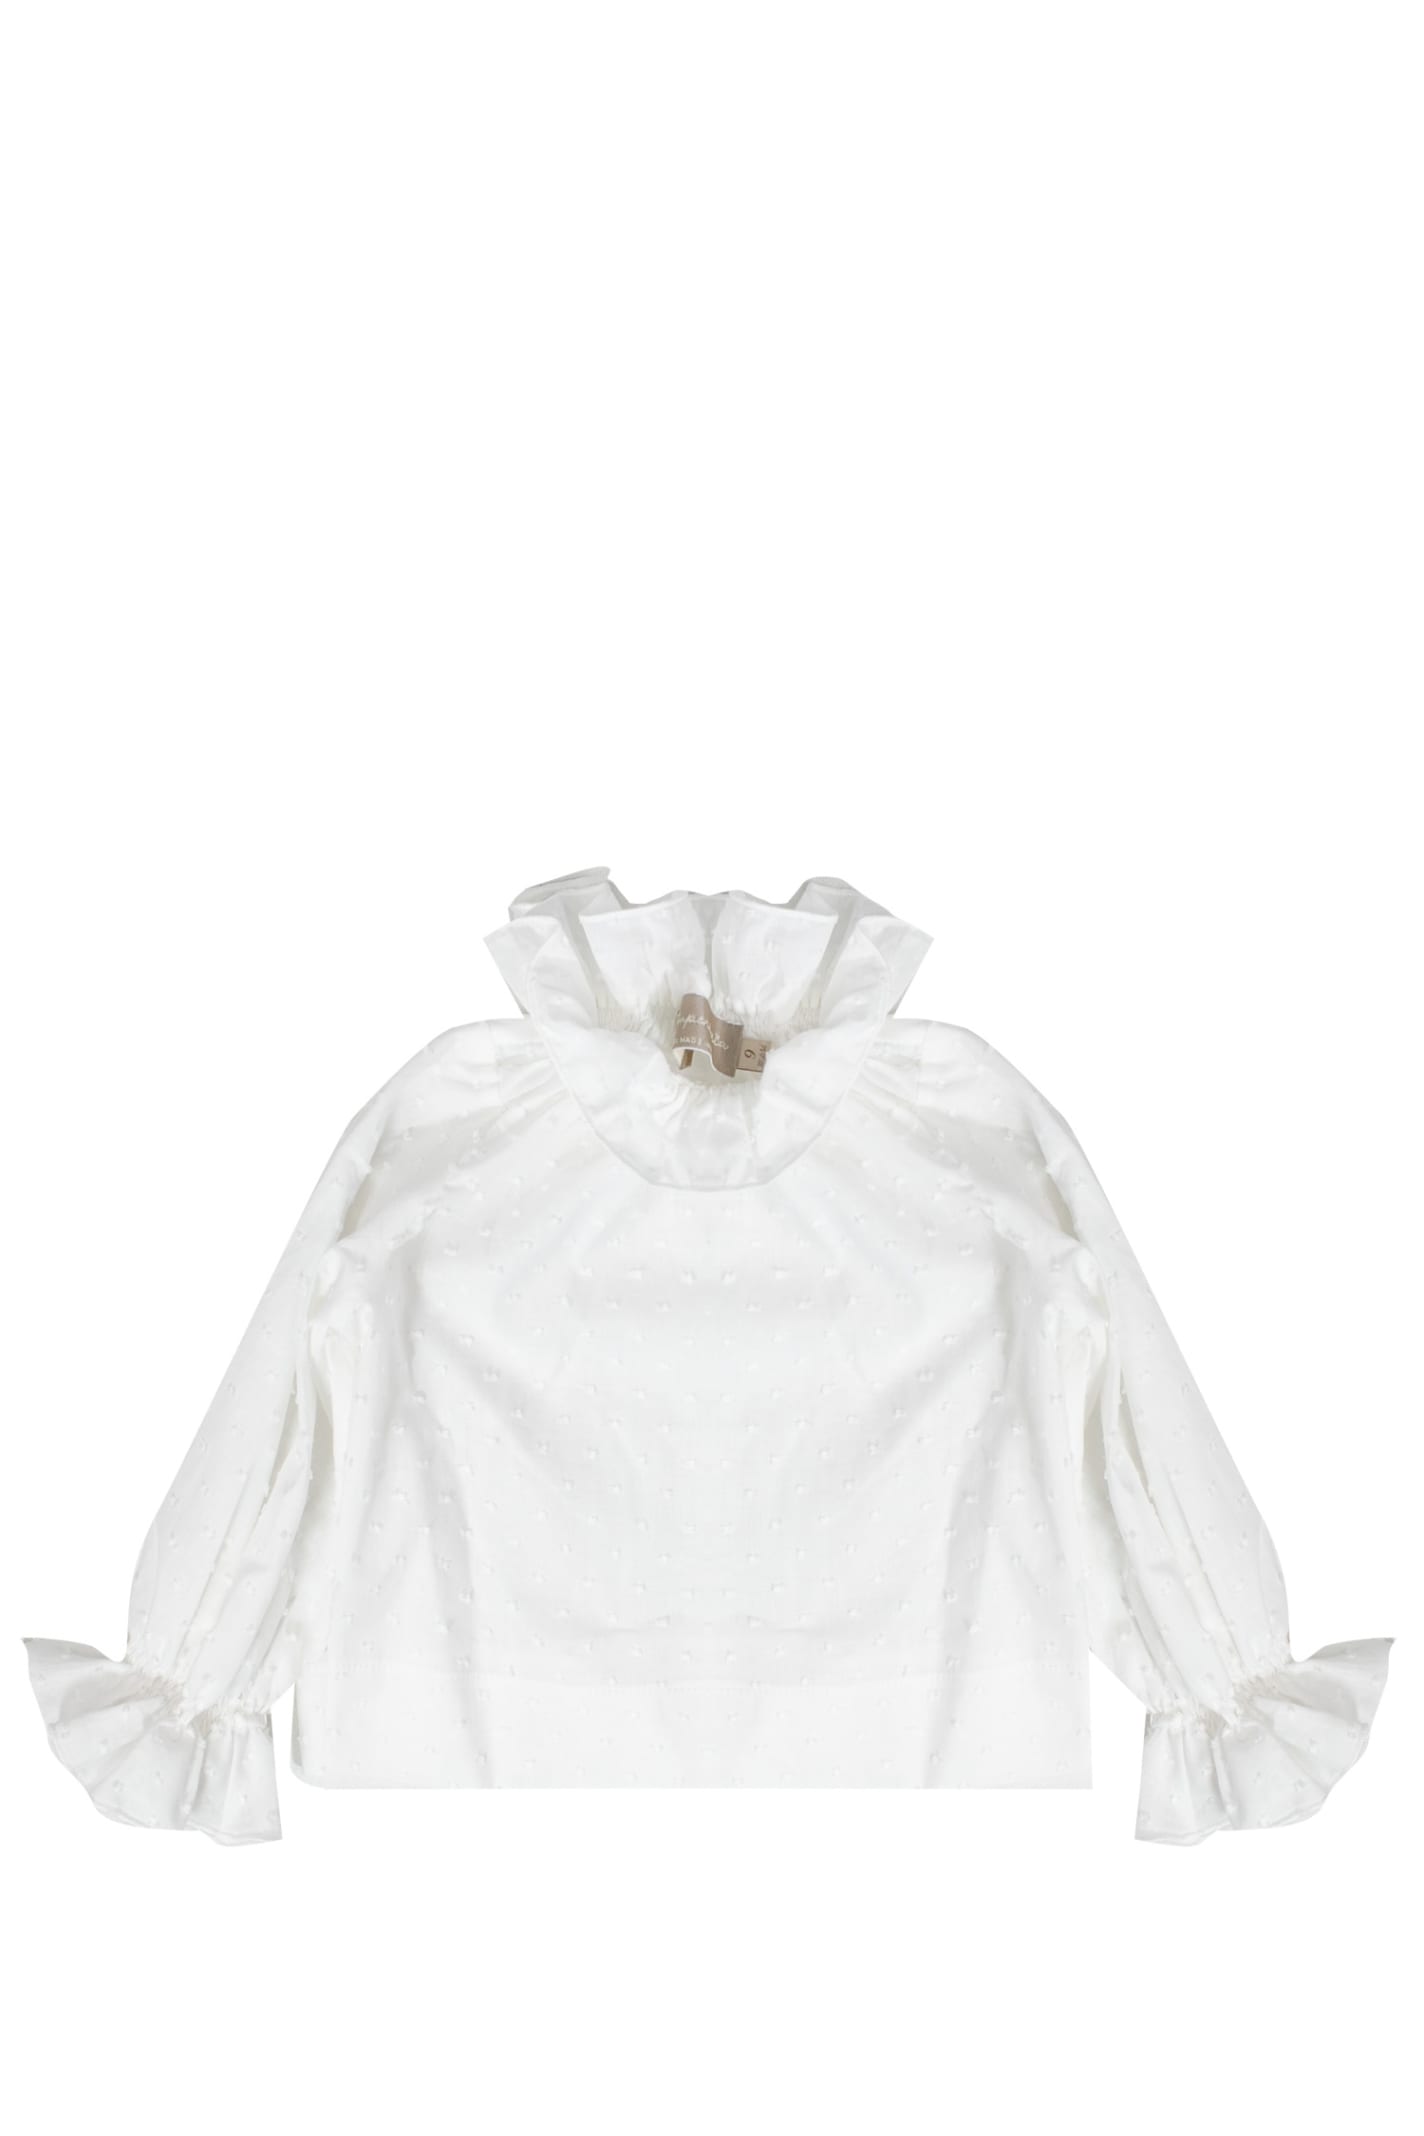 La Stupenderia Kids' Cotton Blouse In White